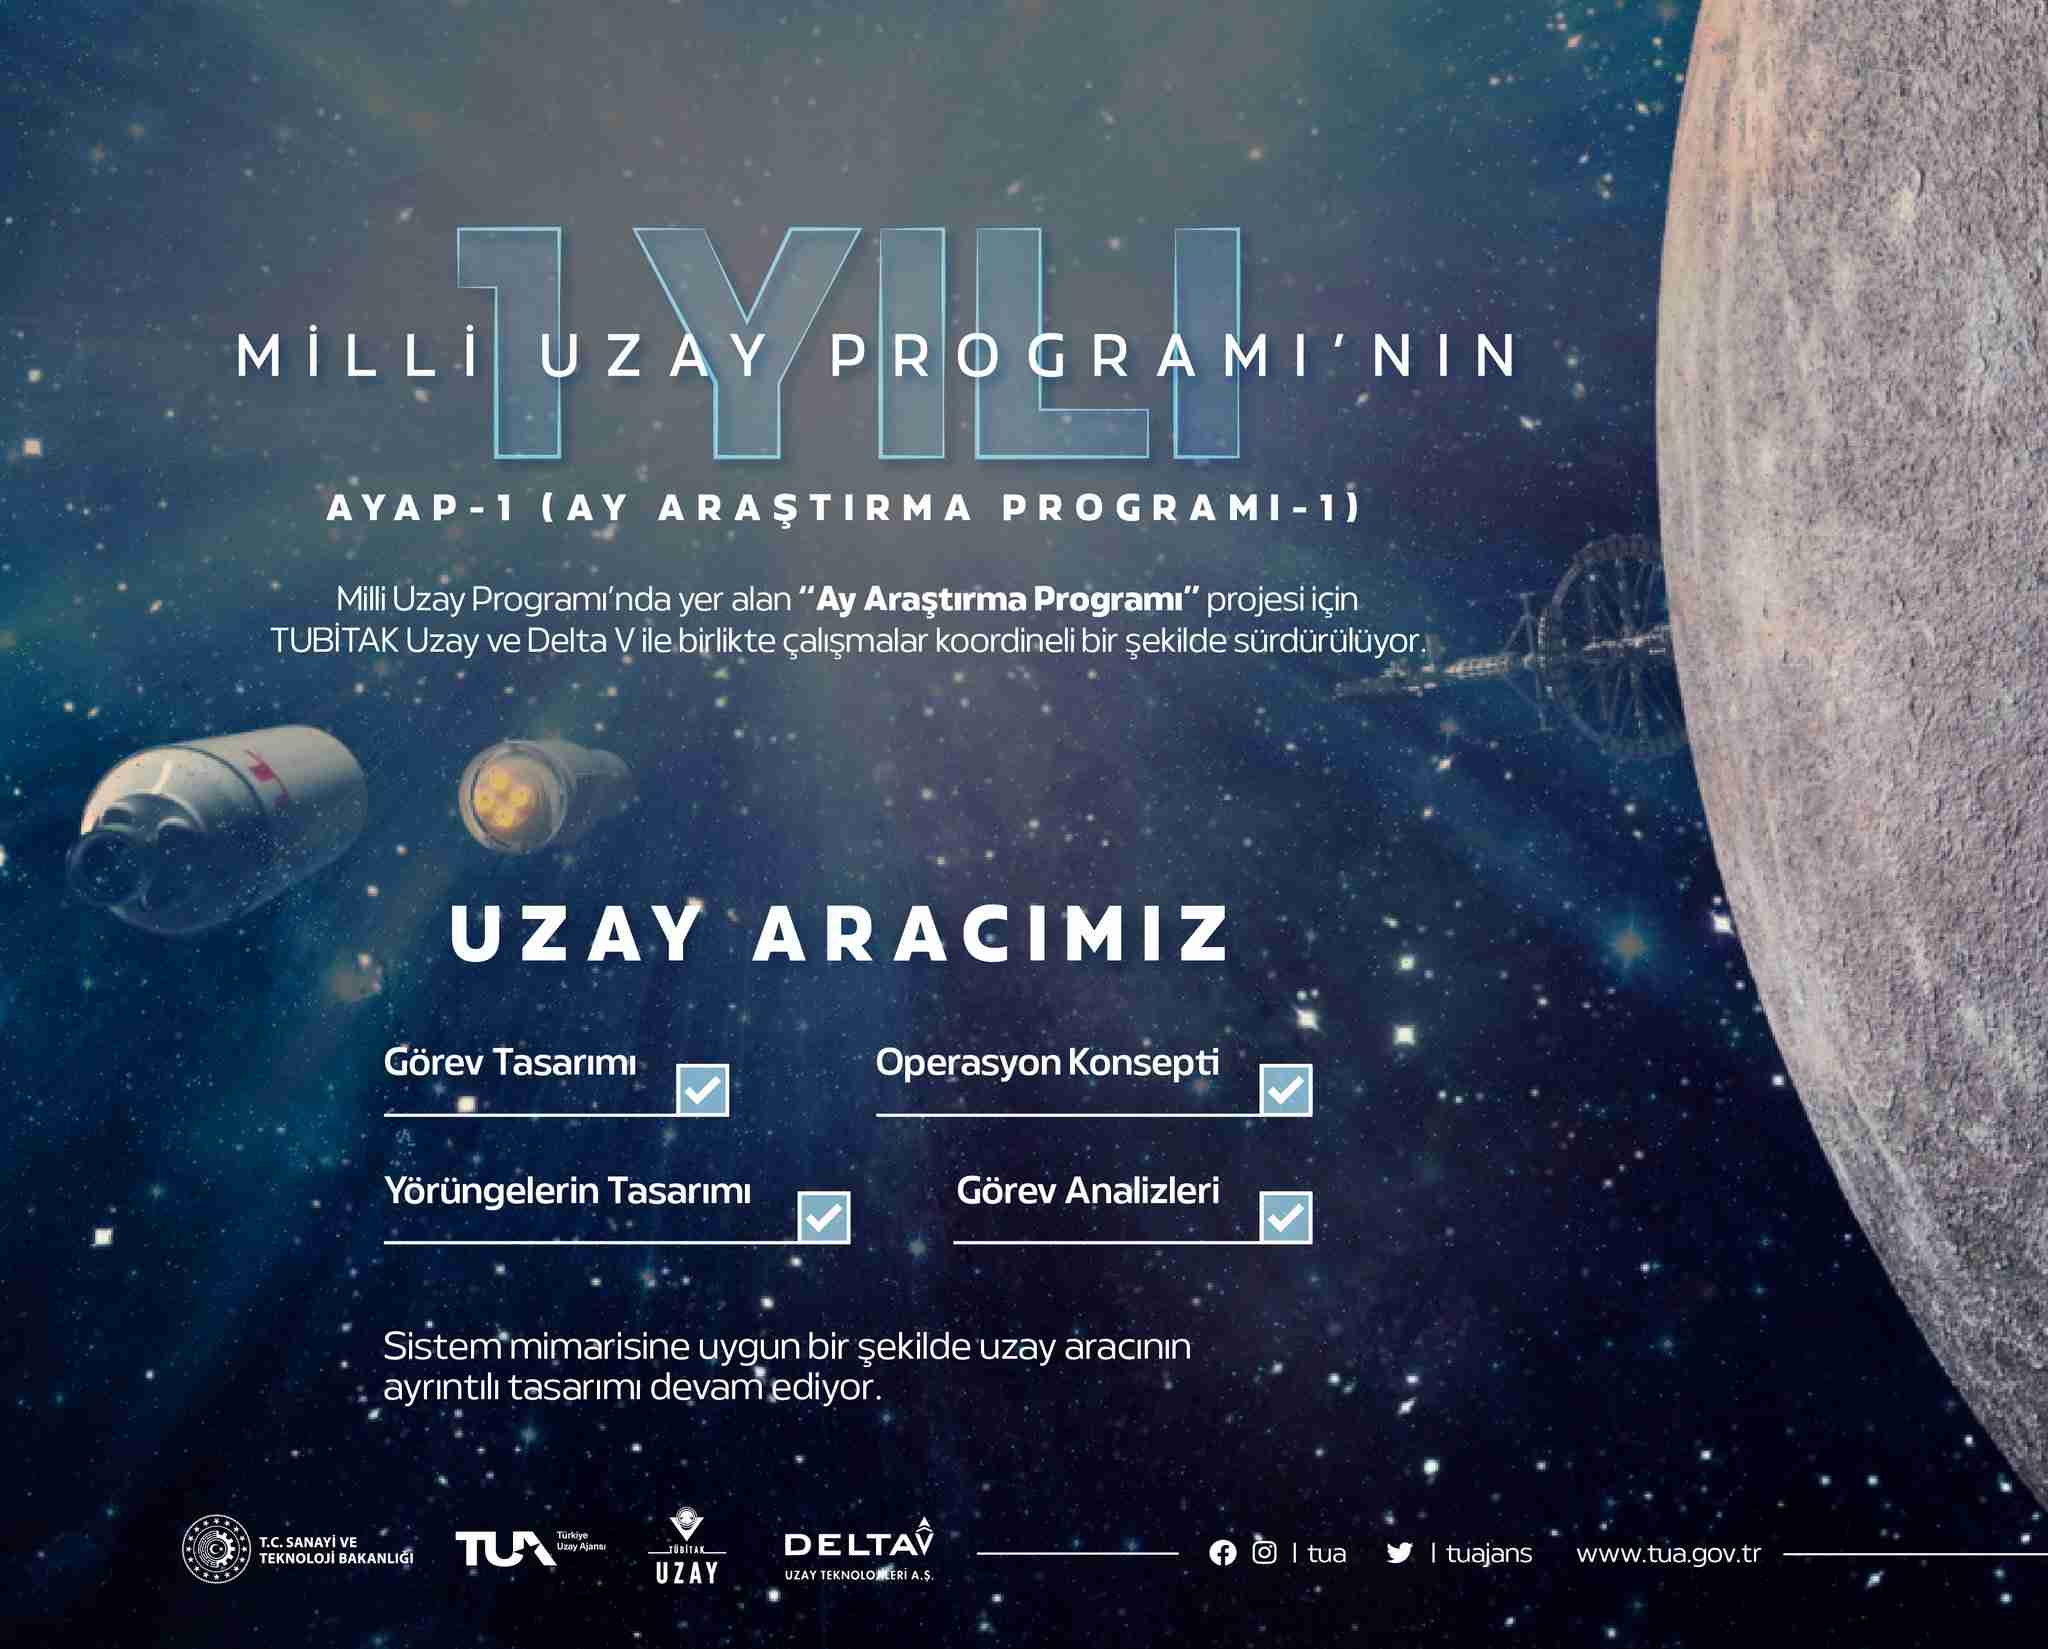 TUA, Milli Uzay Programı çalışmalarına ilişkin bilgi verdi